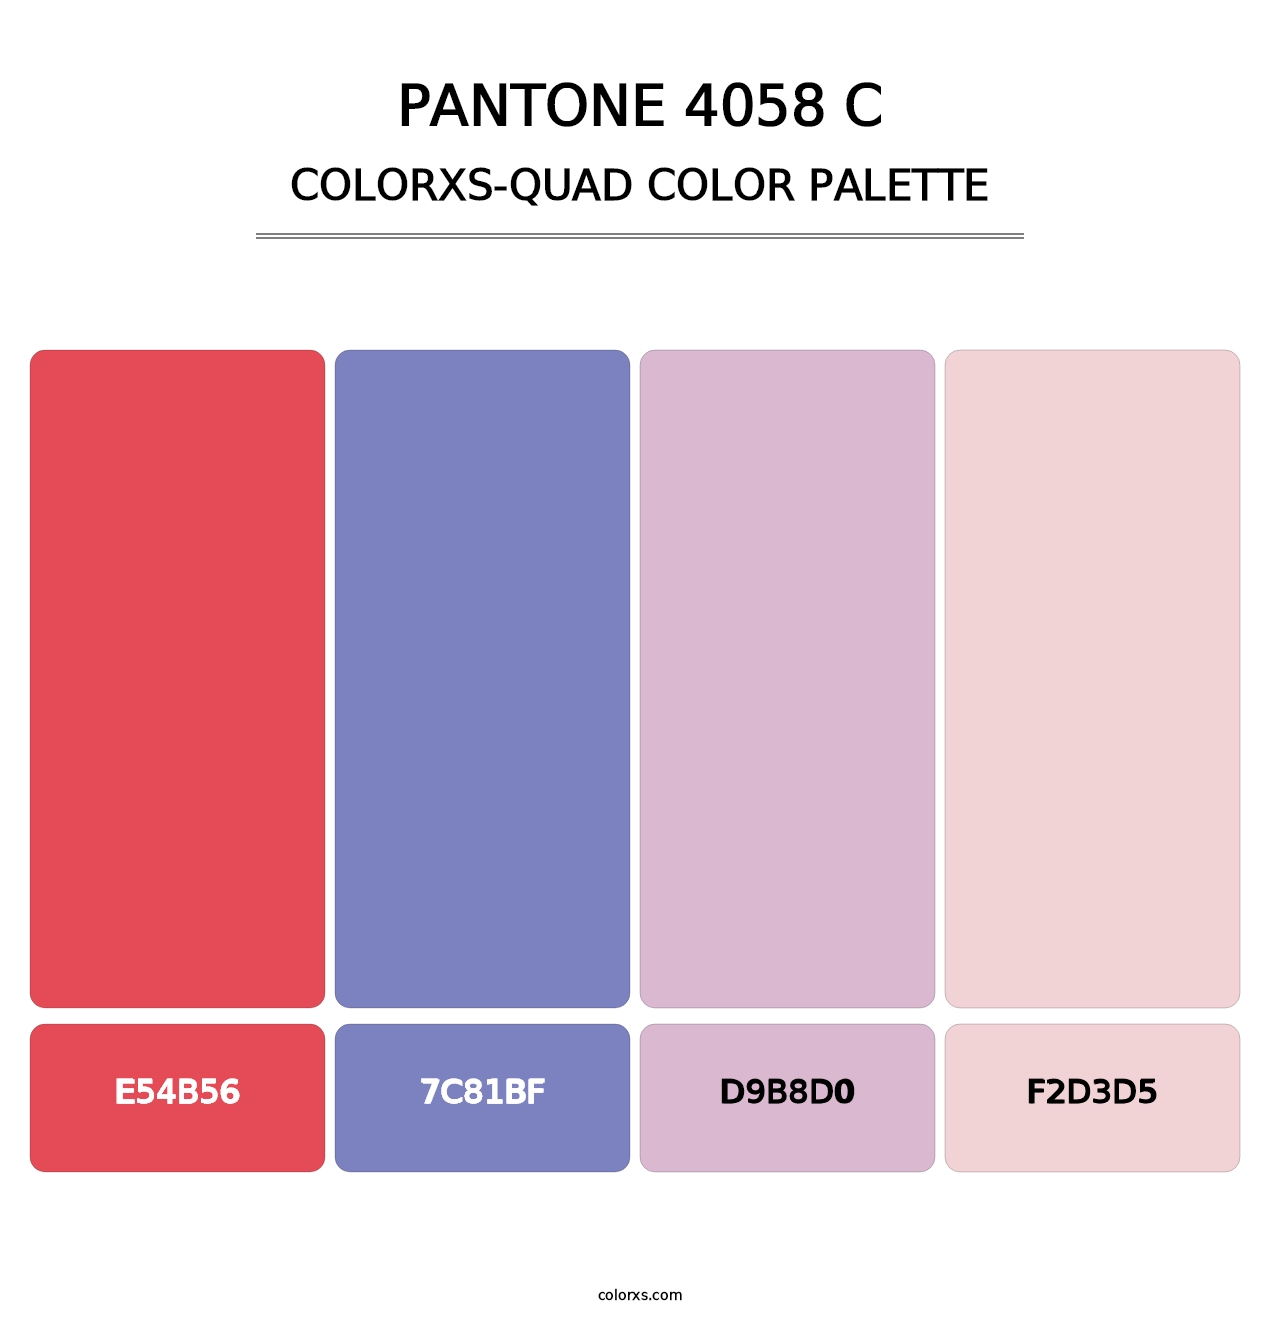 PANTONE 4058 C - Colorxs Quad Palette